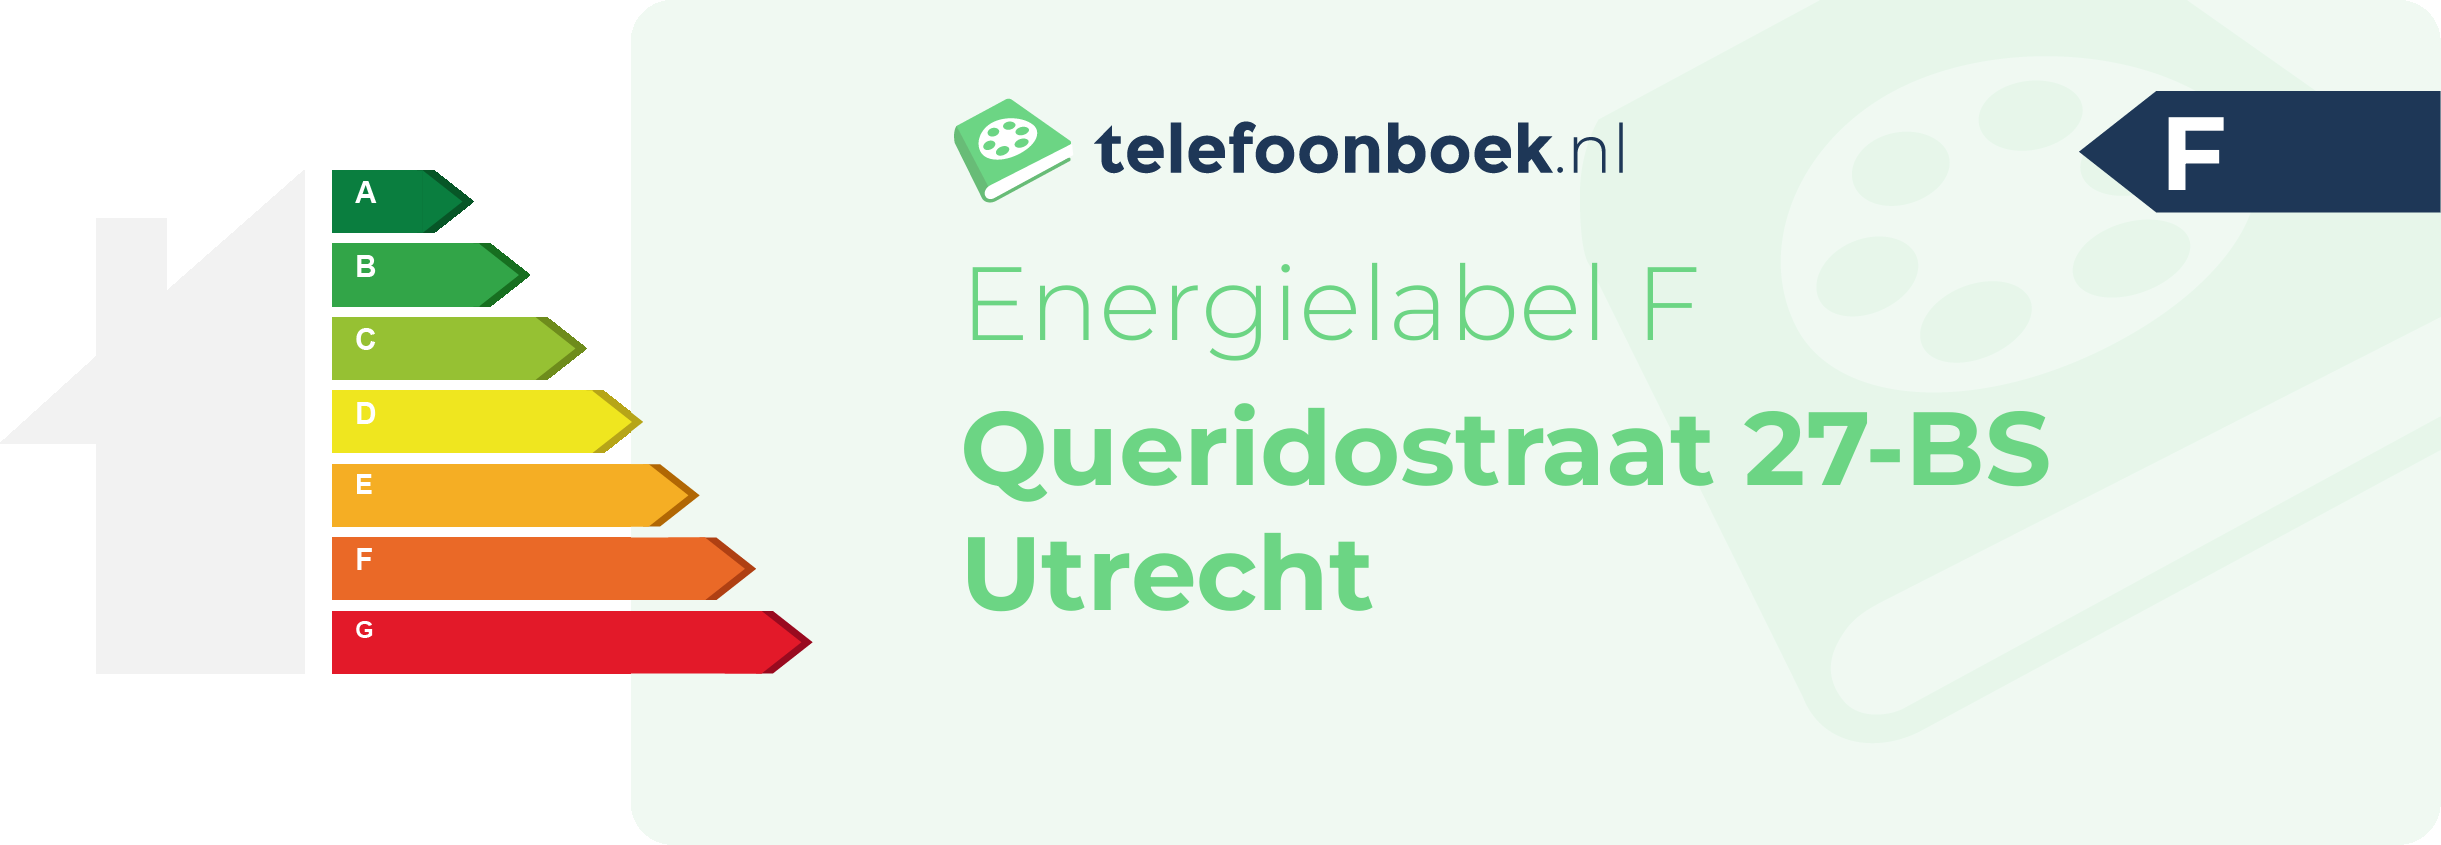 Energielabel Queridostraat 27-BS Utrecht